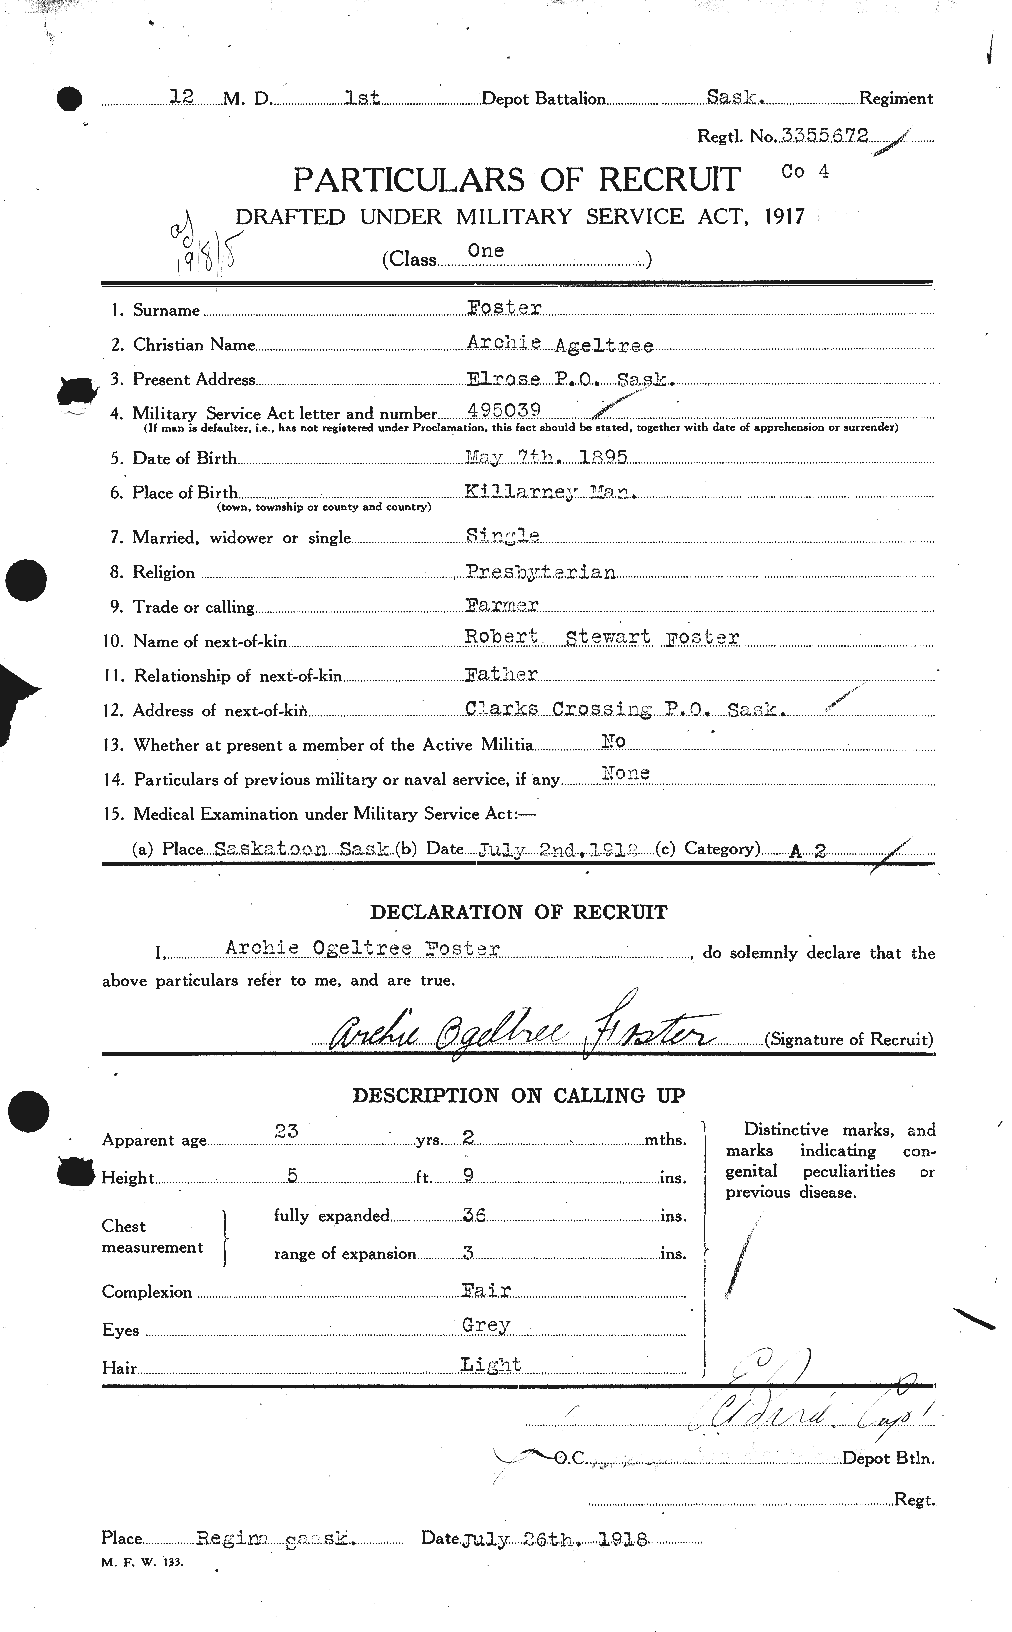 Dossiers du Personnel de la Première Guerre mondiale - CEC 330463a